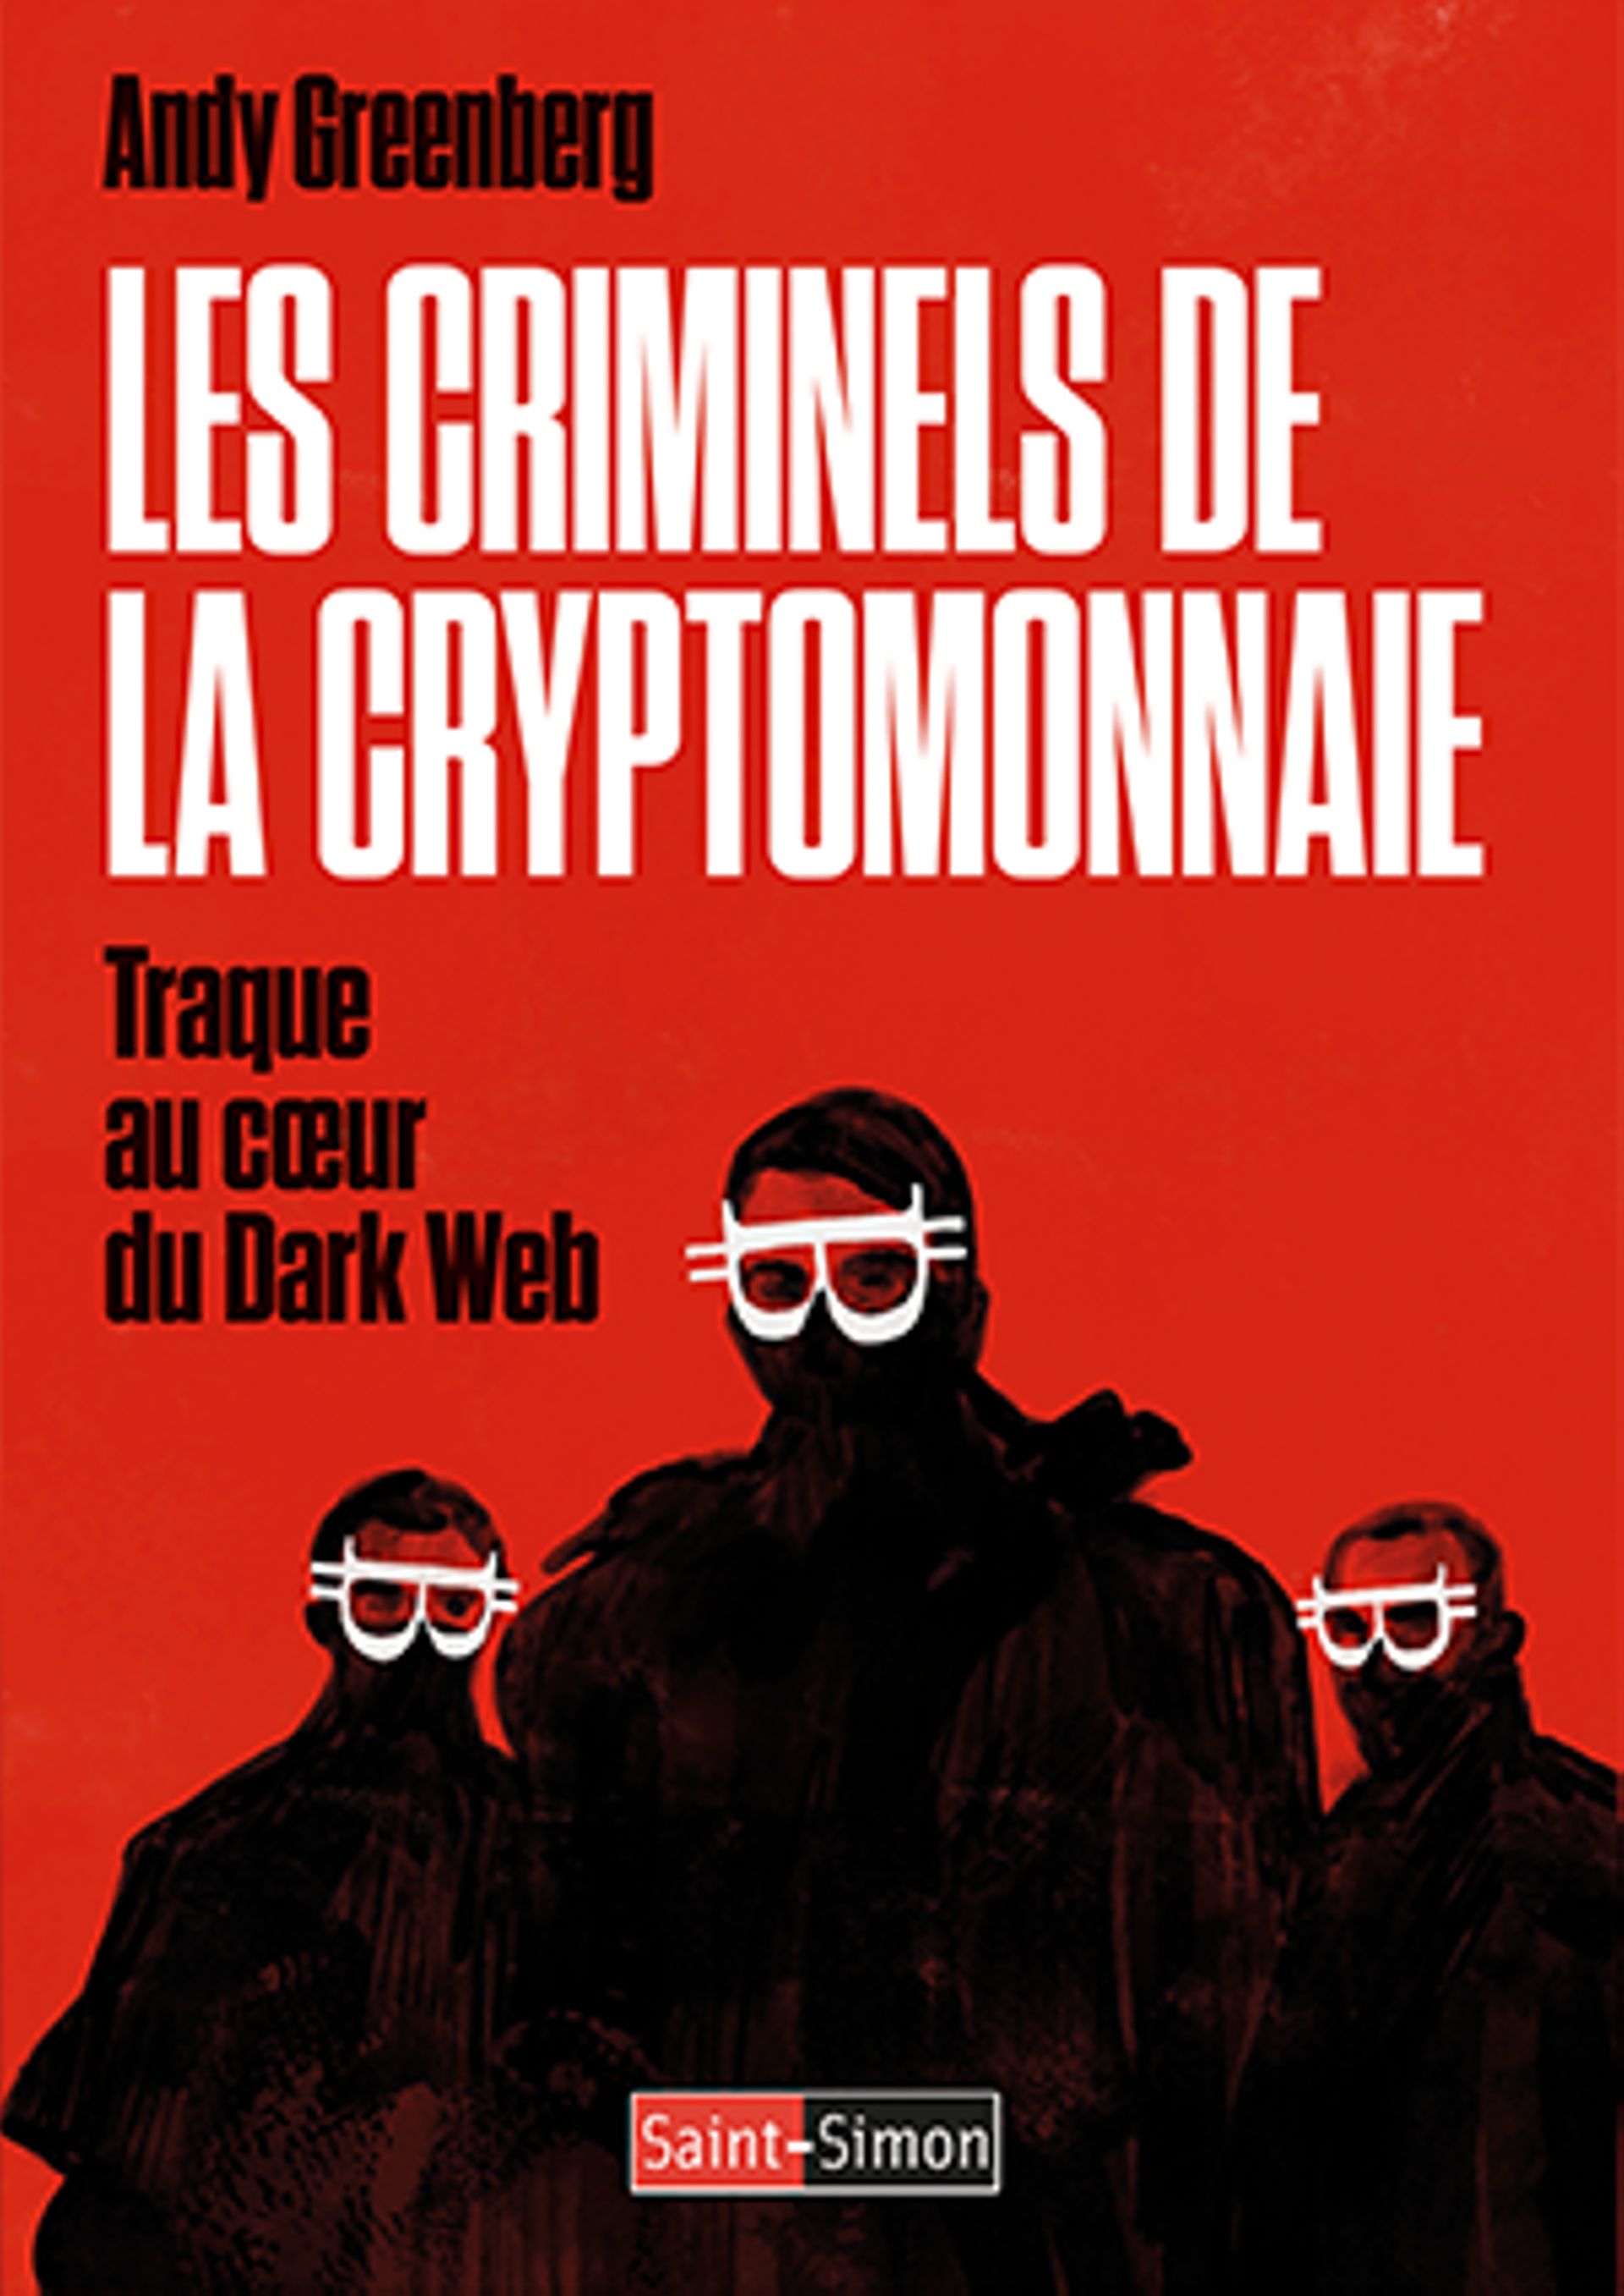 Les Criminels de la cryptomonnaie
Traque au cœur du Dark Web